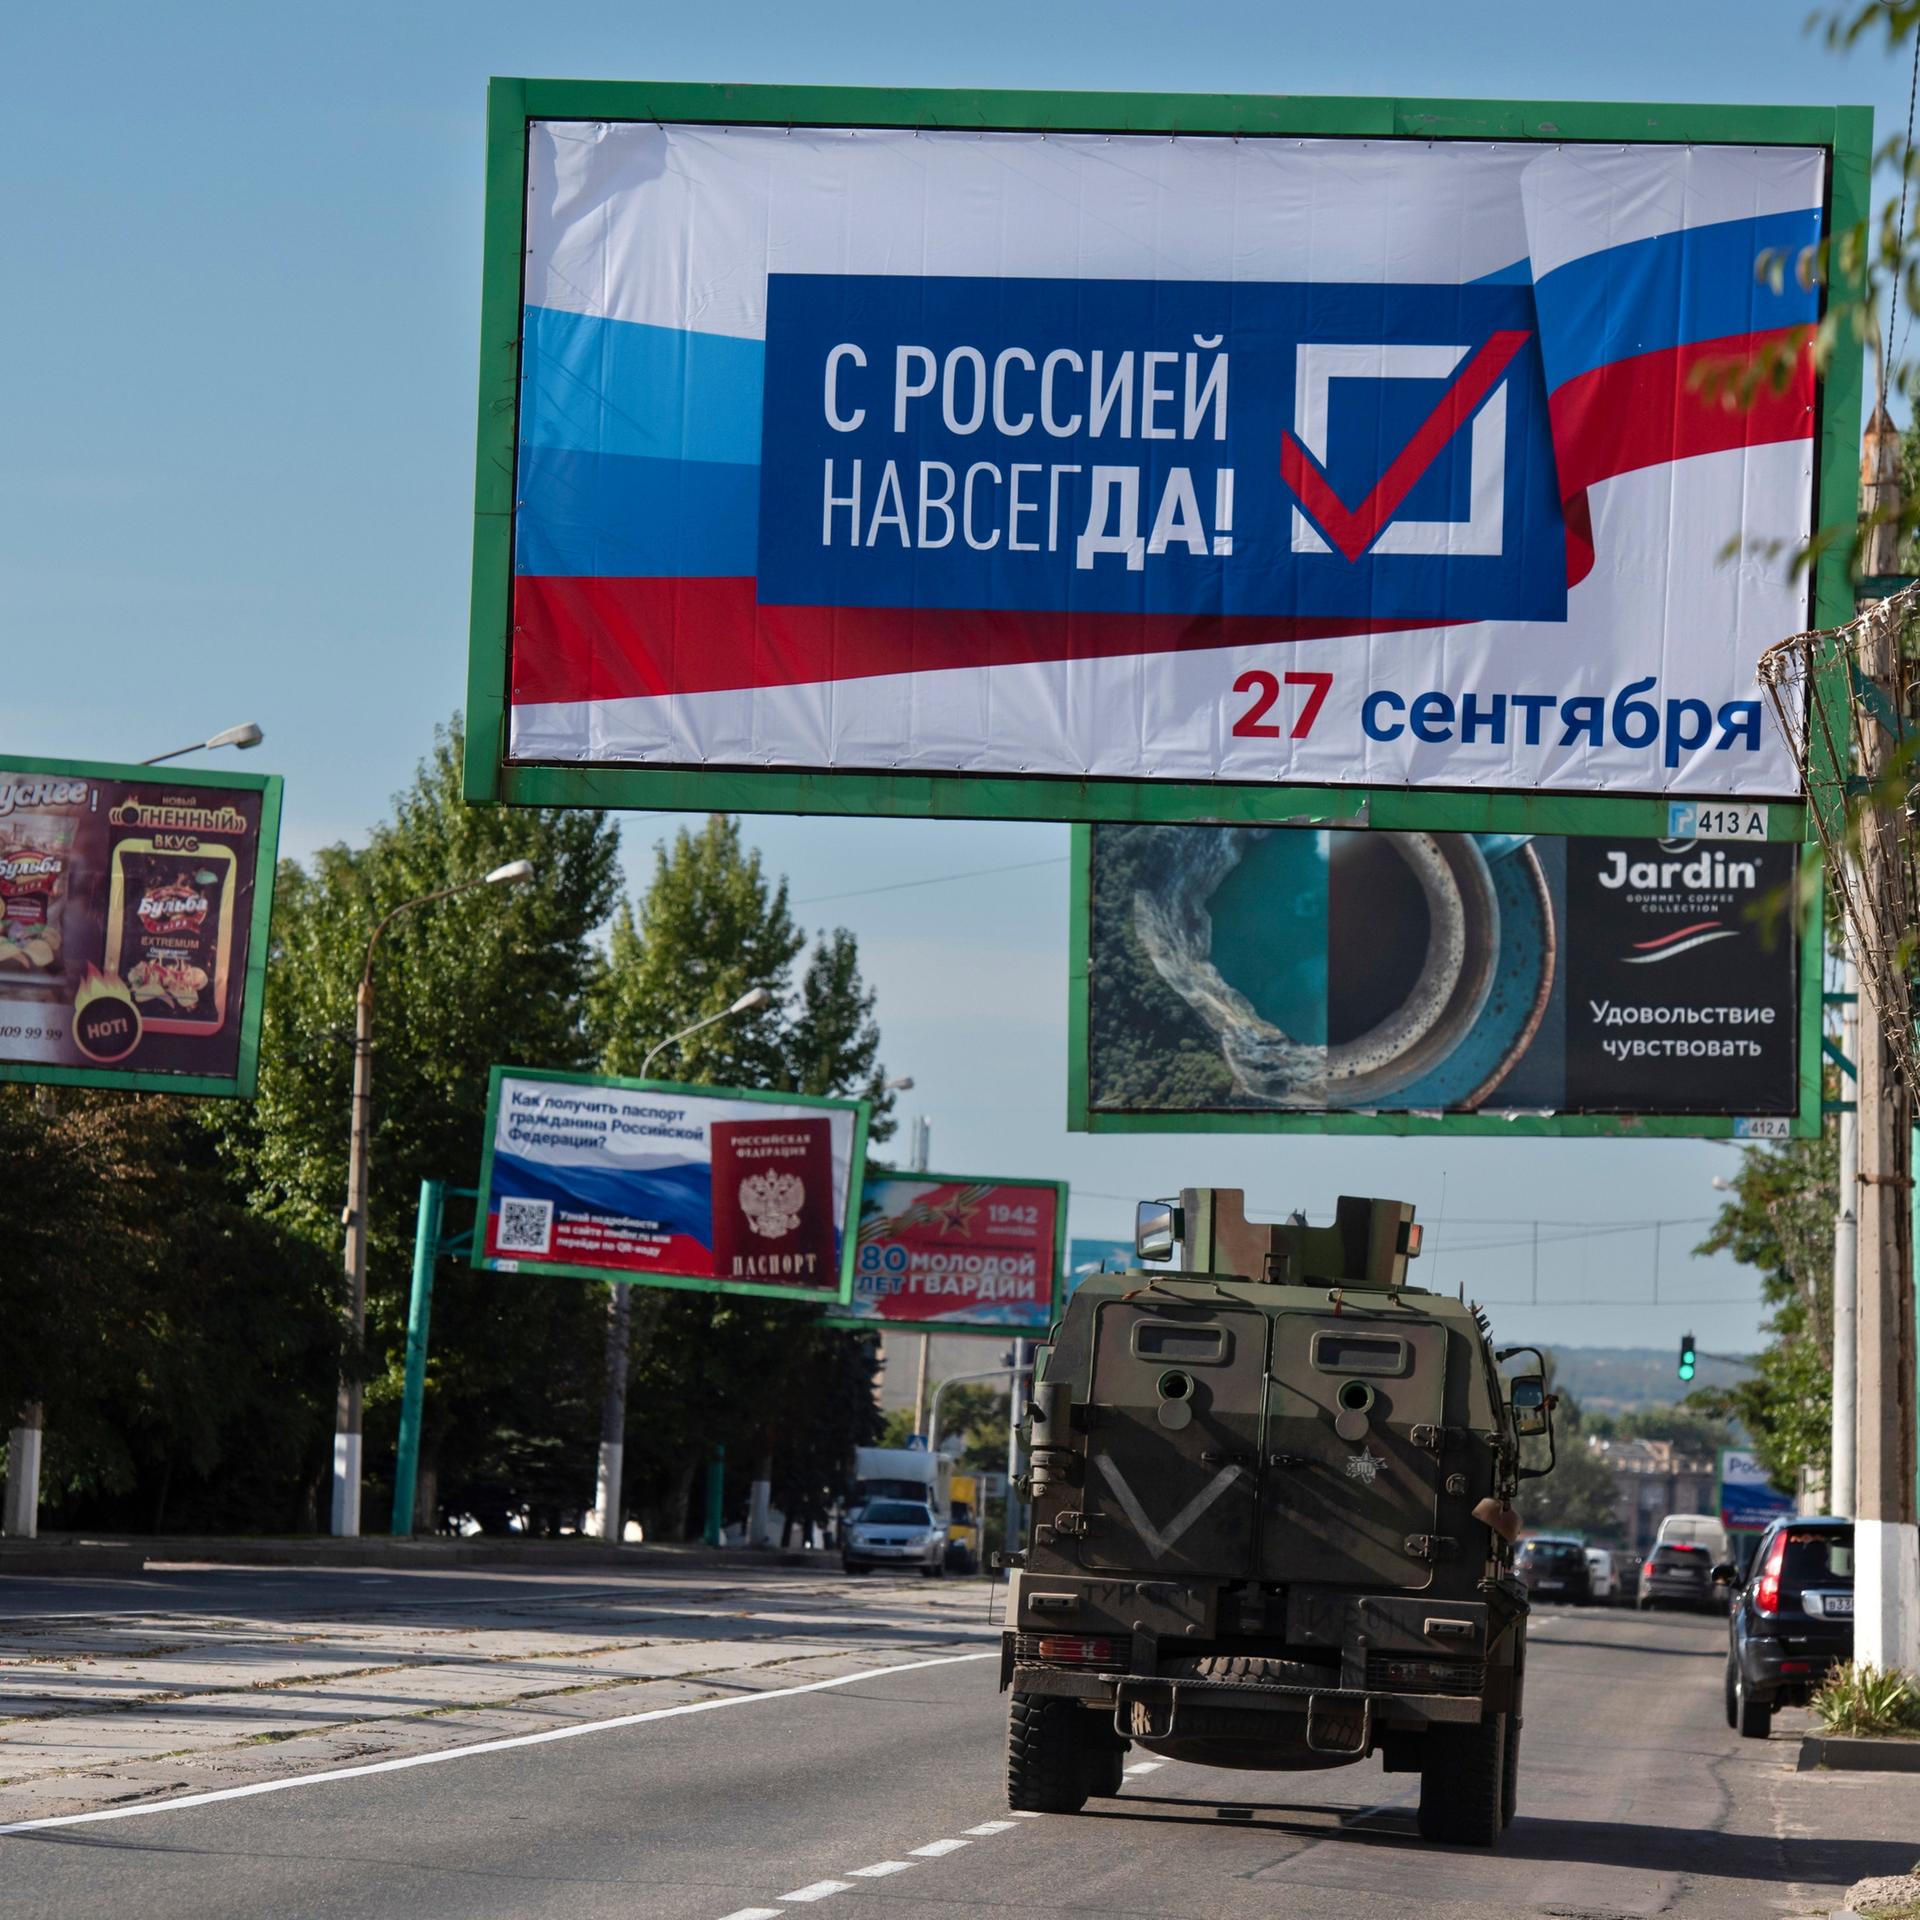 In Luhansk wirbt ein Plakat mit der Aufschrift "Für immer mit Russland, 27. September" für das Schein-Referendum, das den Anschluss an Russland zum Ziel hat.